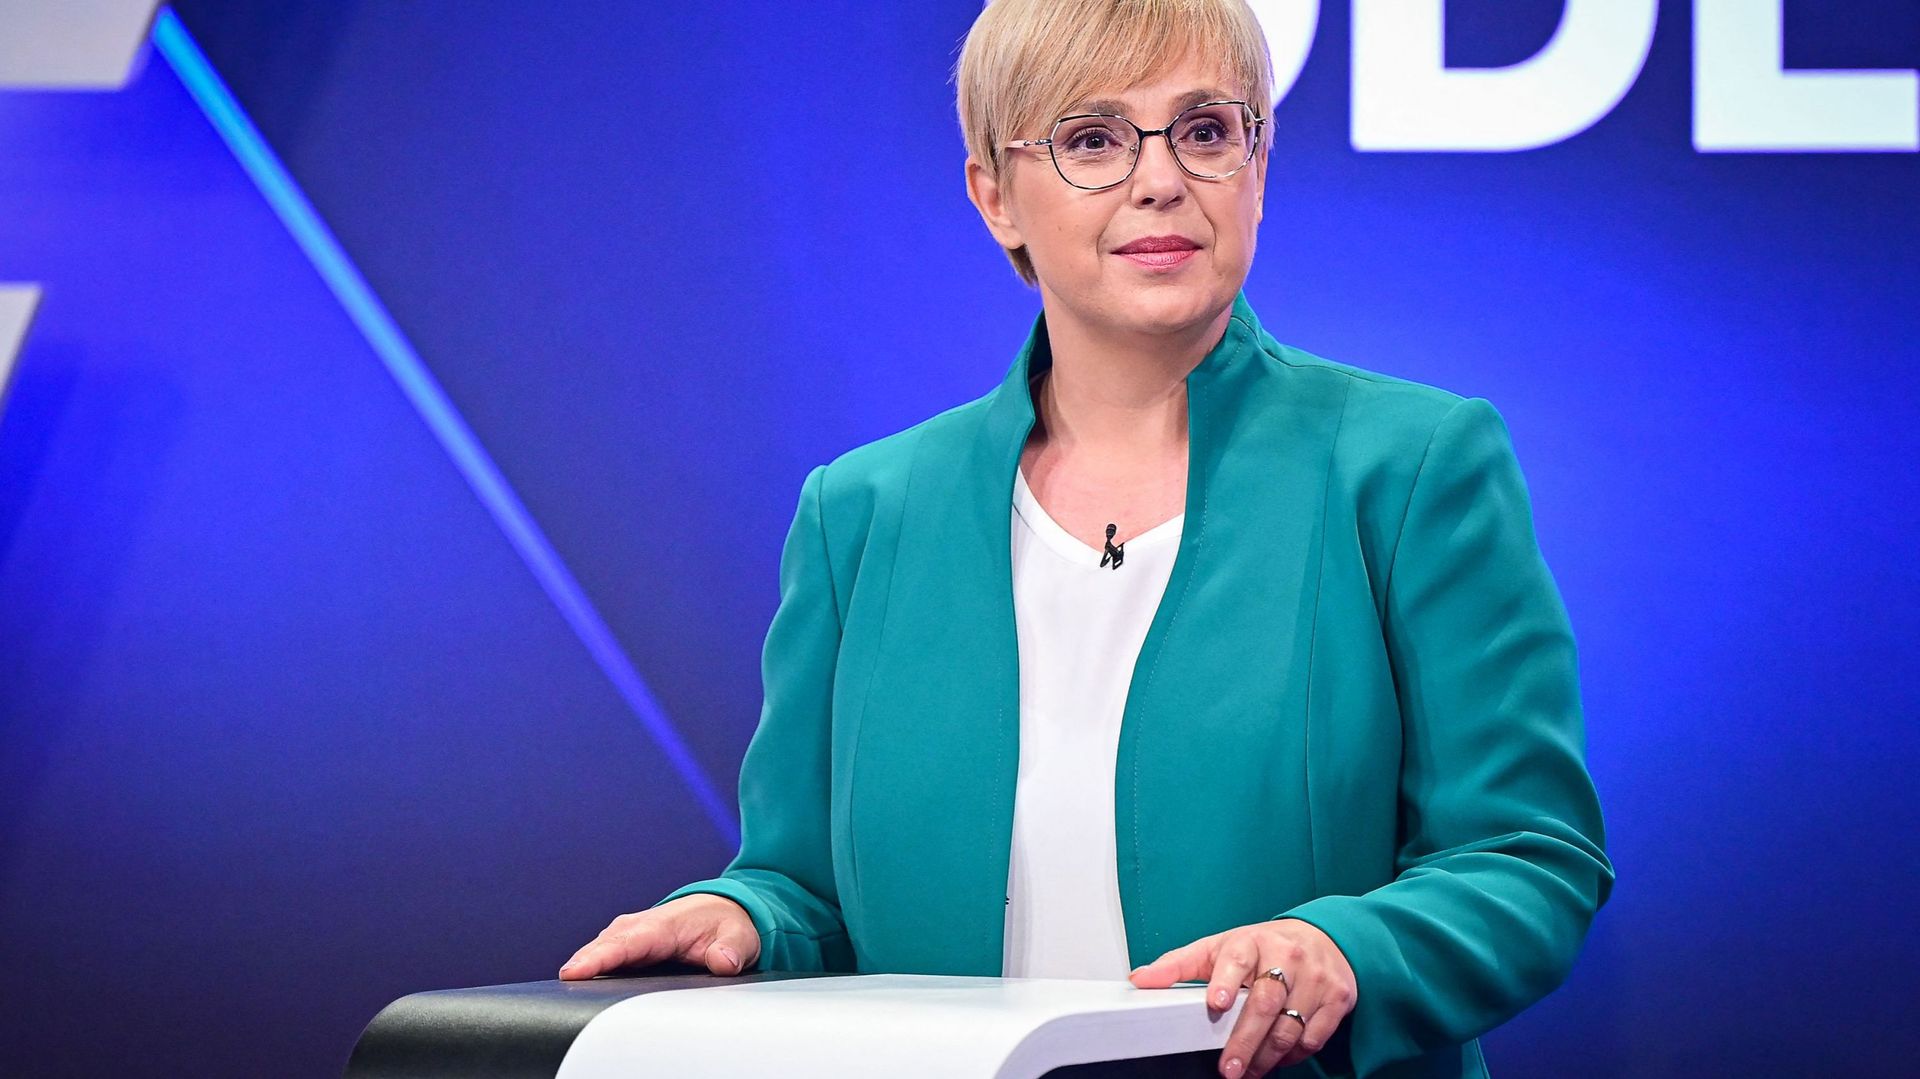 L'avocate libérale est favorite au second tour des présidentielles en Slovénie